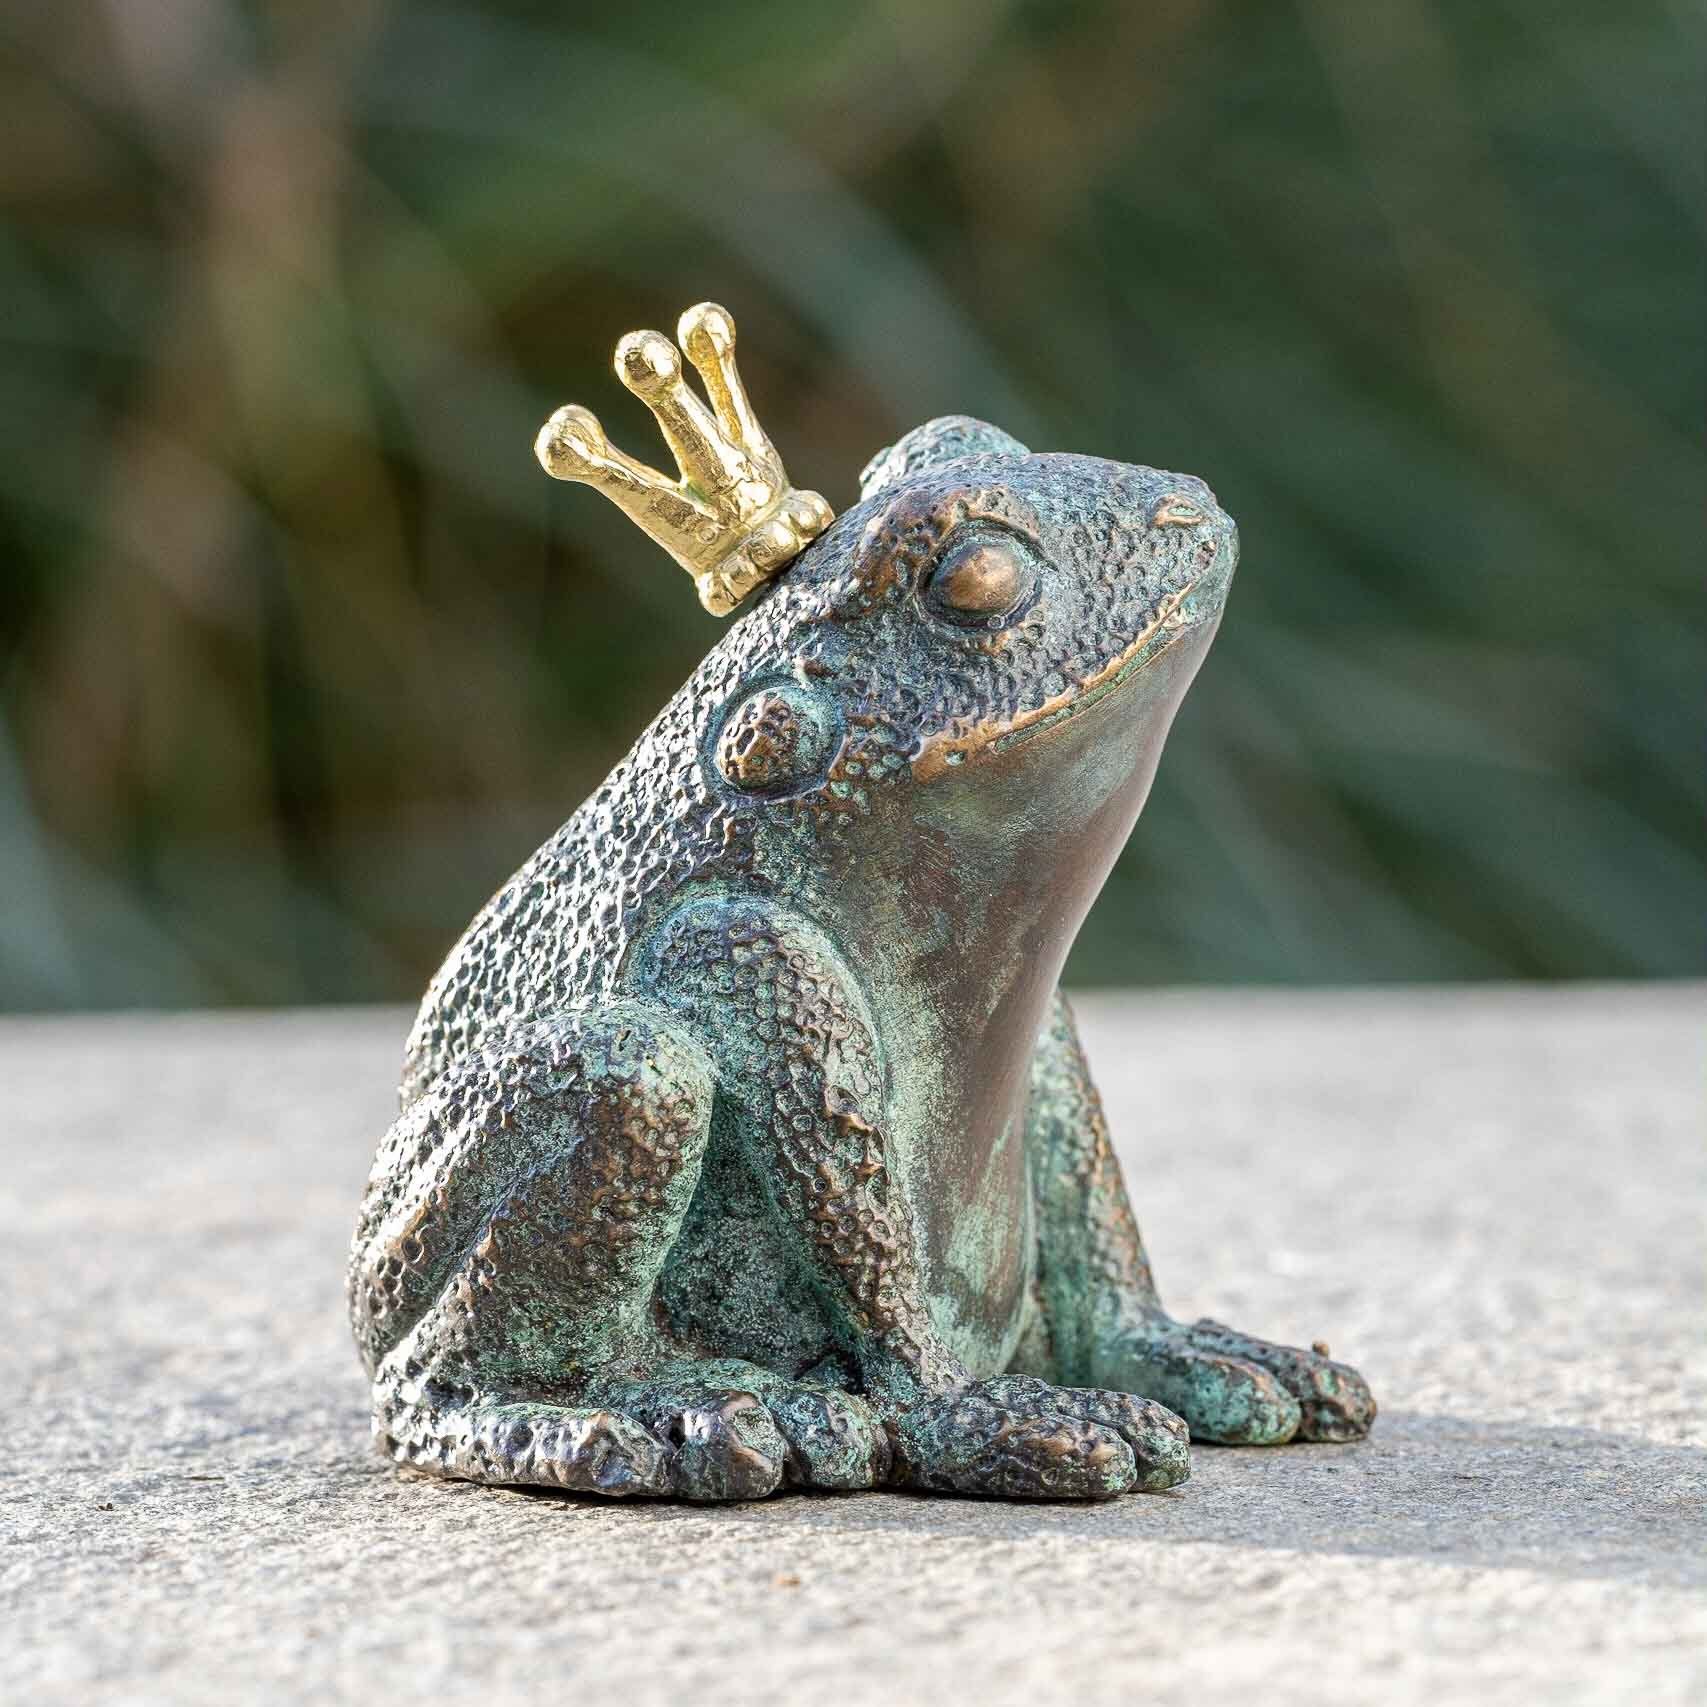 IDYL patiniert. gegossen in Bronze IDYL Die gegen von wasserspeiend, robust Frosch werden witterungsbeständig – Modelle in Frost, Regen Langlebig Gartenfigur Hand und UV-Strahlung. – und Bronze-Skulptur Wachsausschmelzverfahren – Bronze sehr